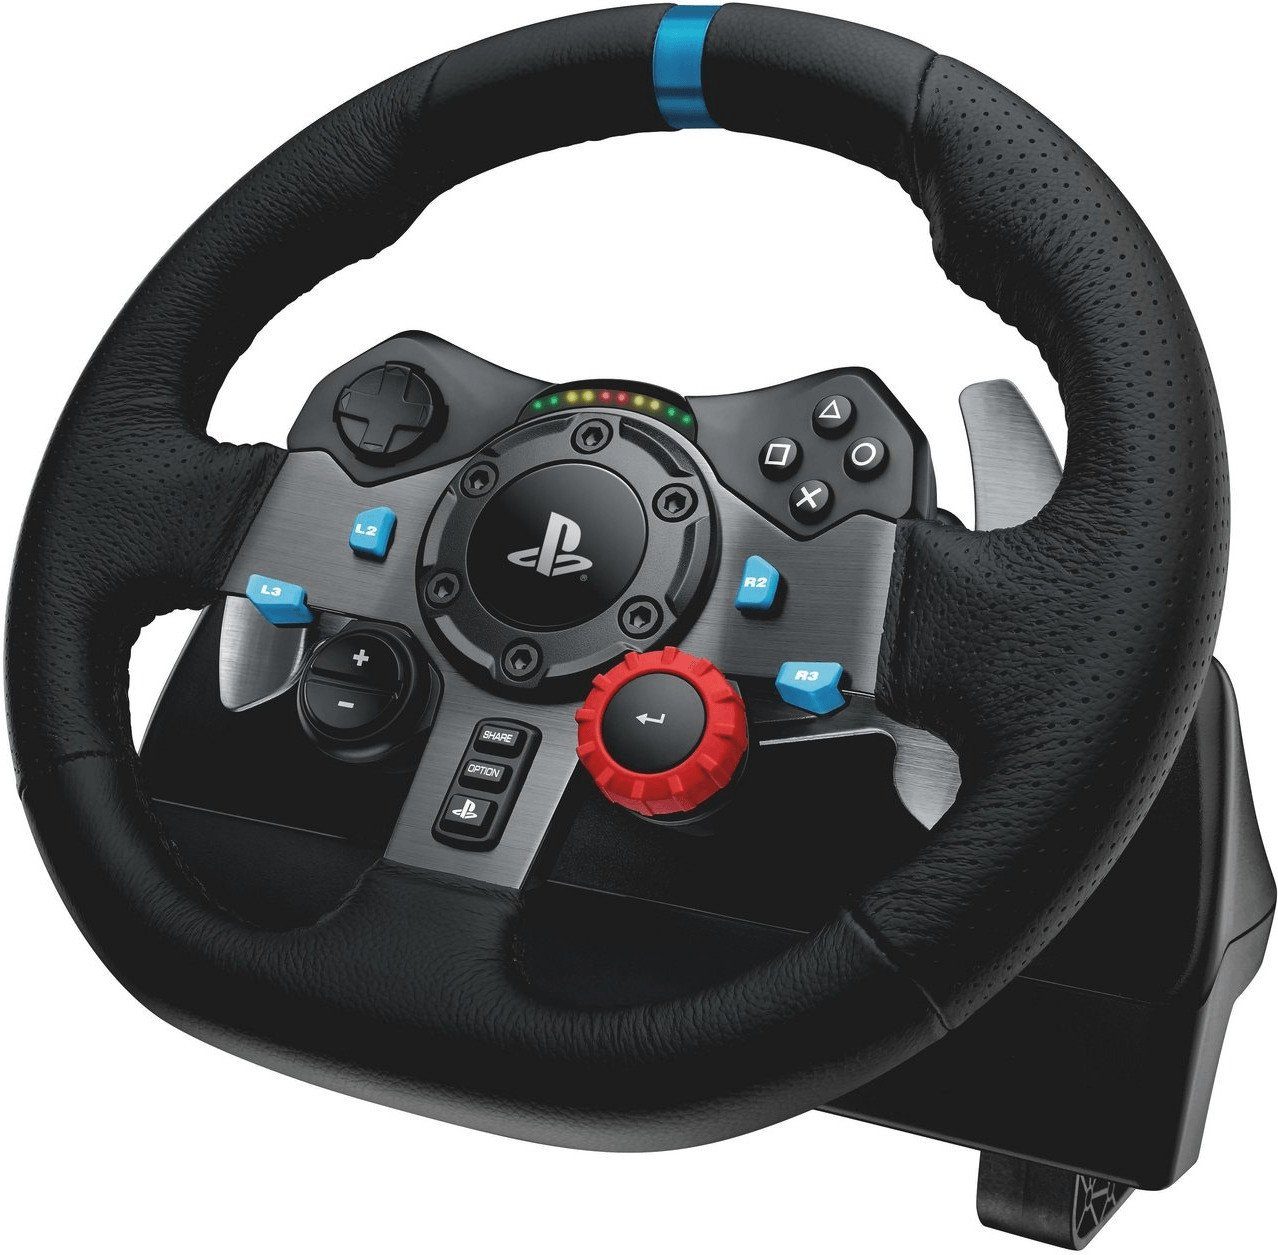 Logitech G »G29 Driving Force« Gaming-Lenkrad